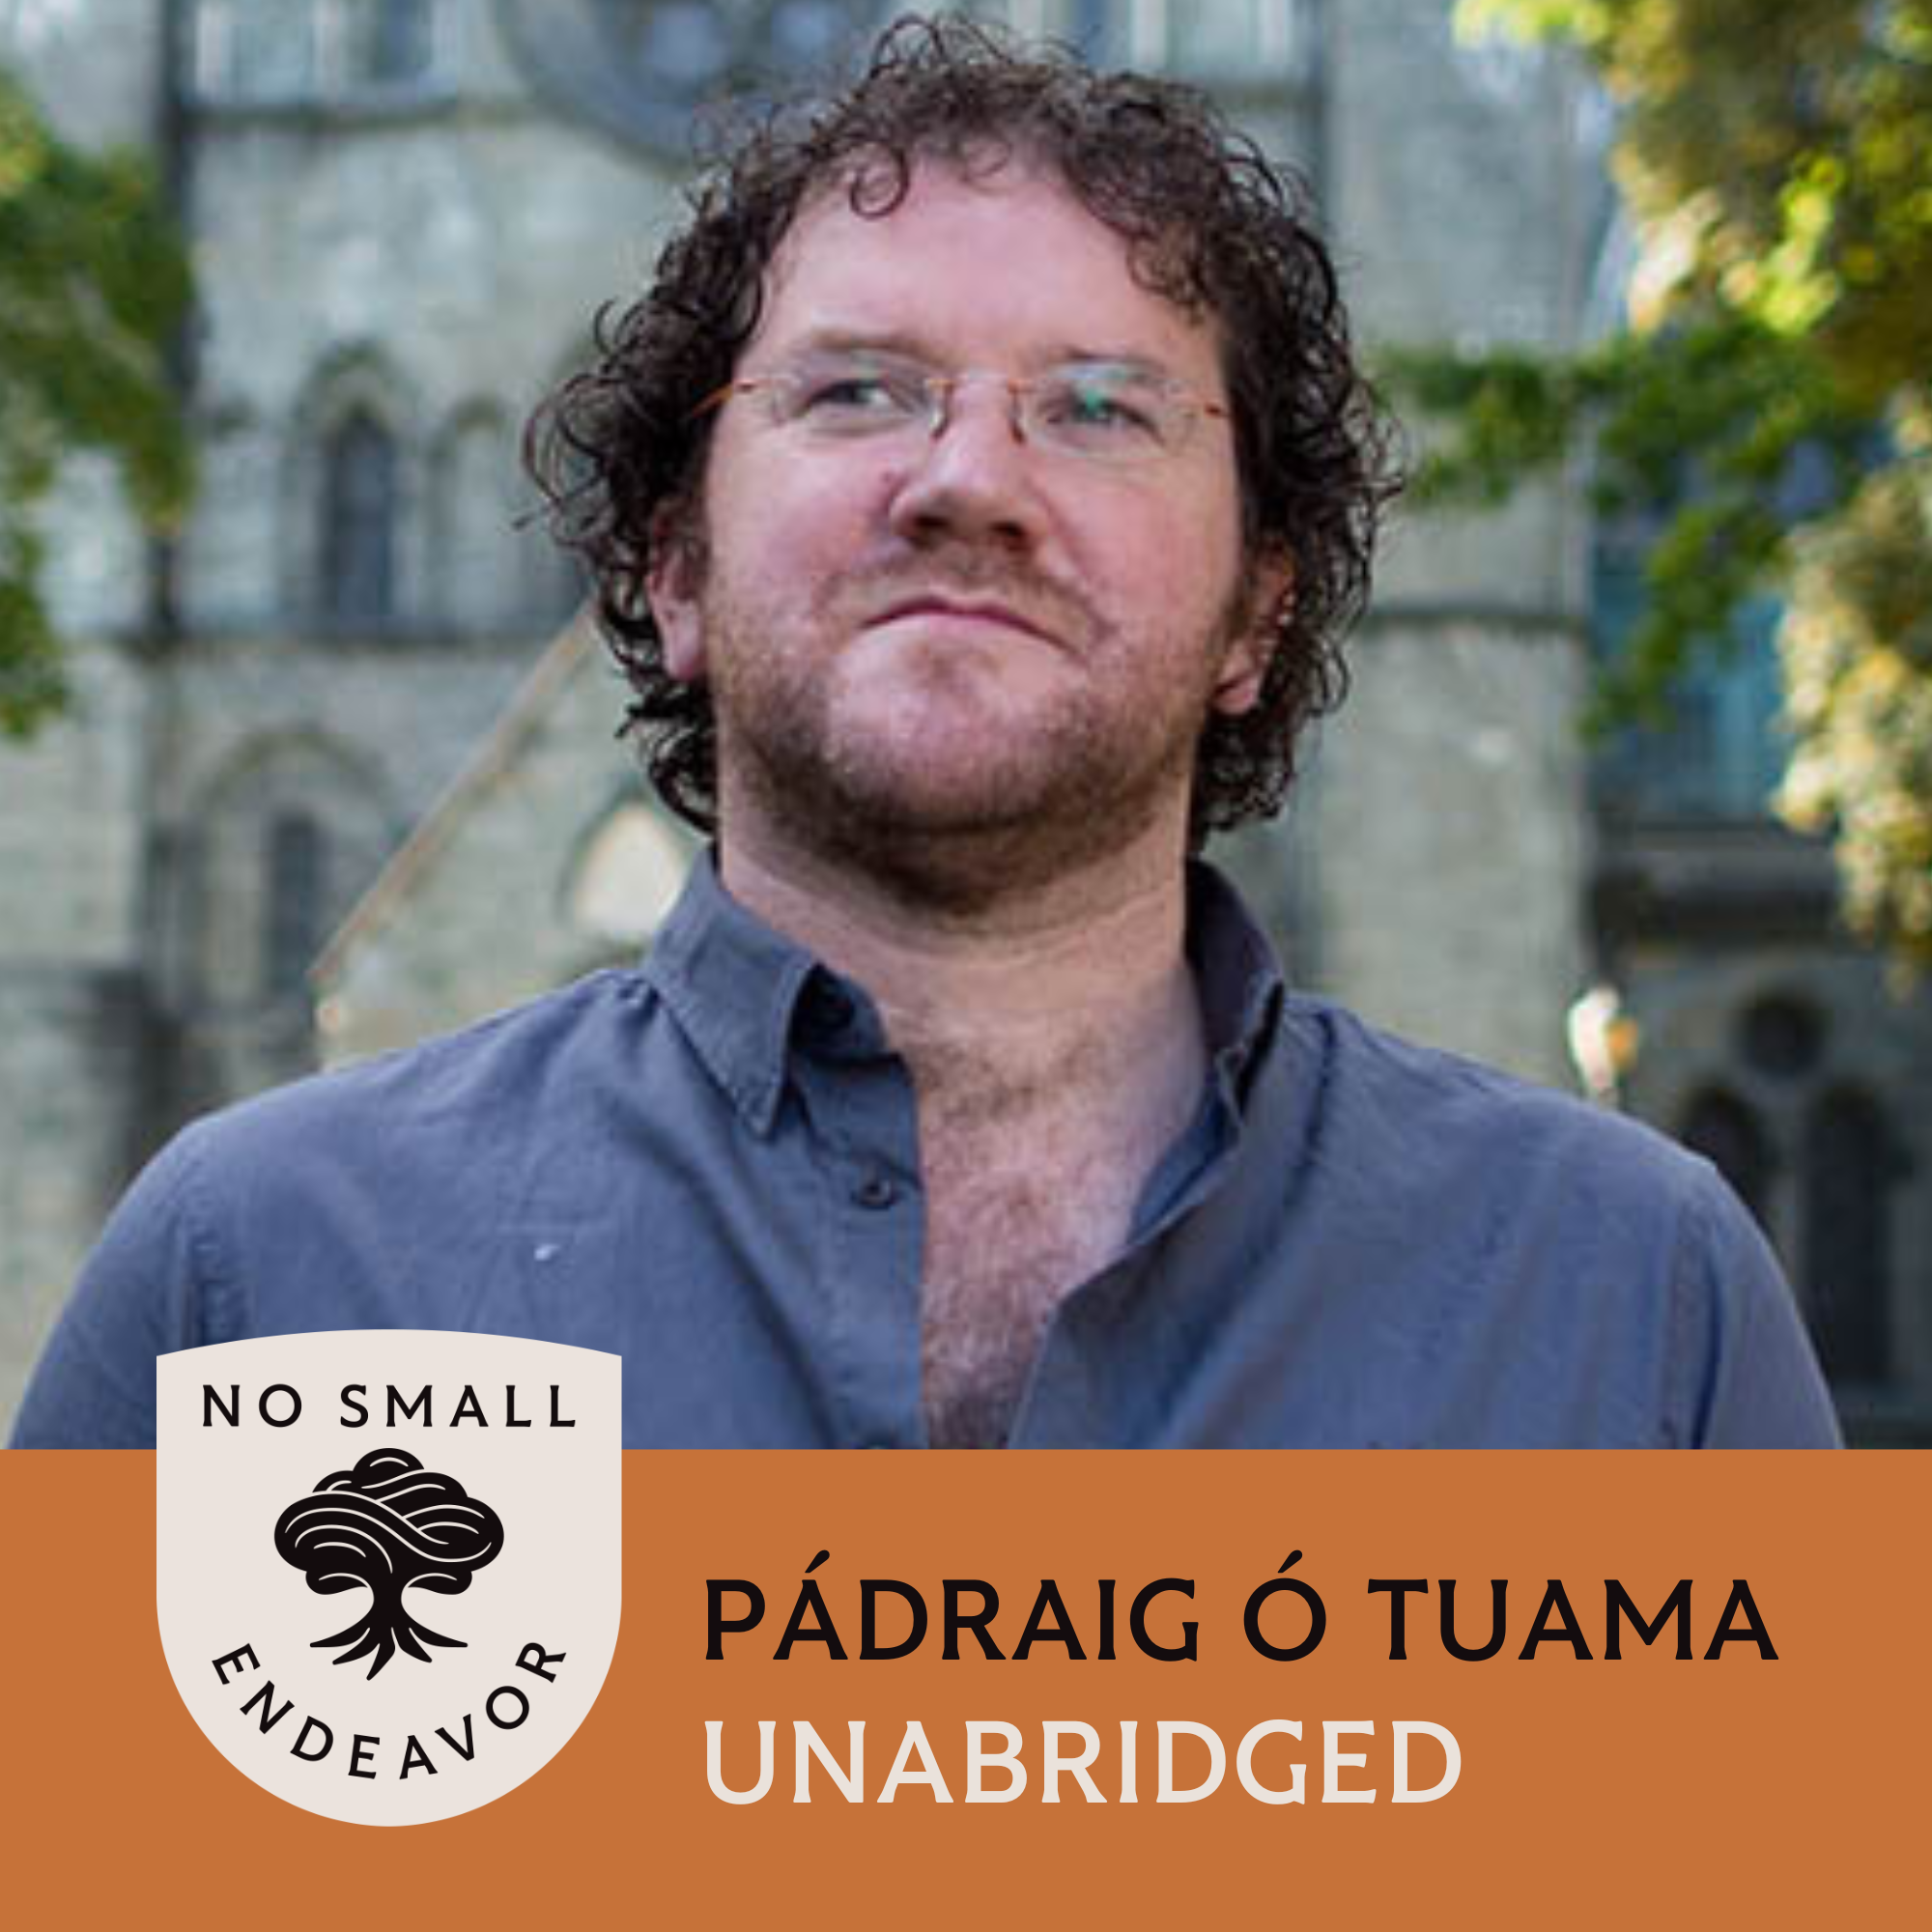 151: Unabridged Interview: Pádraig Ó Tuama